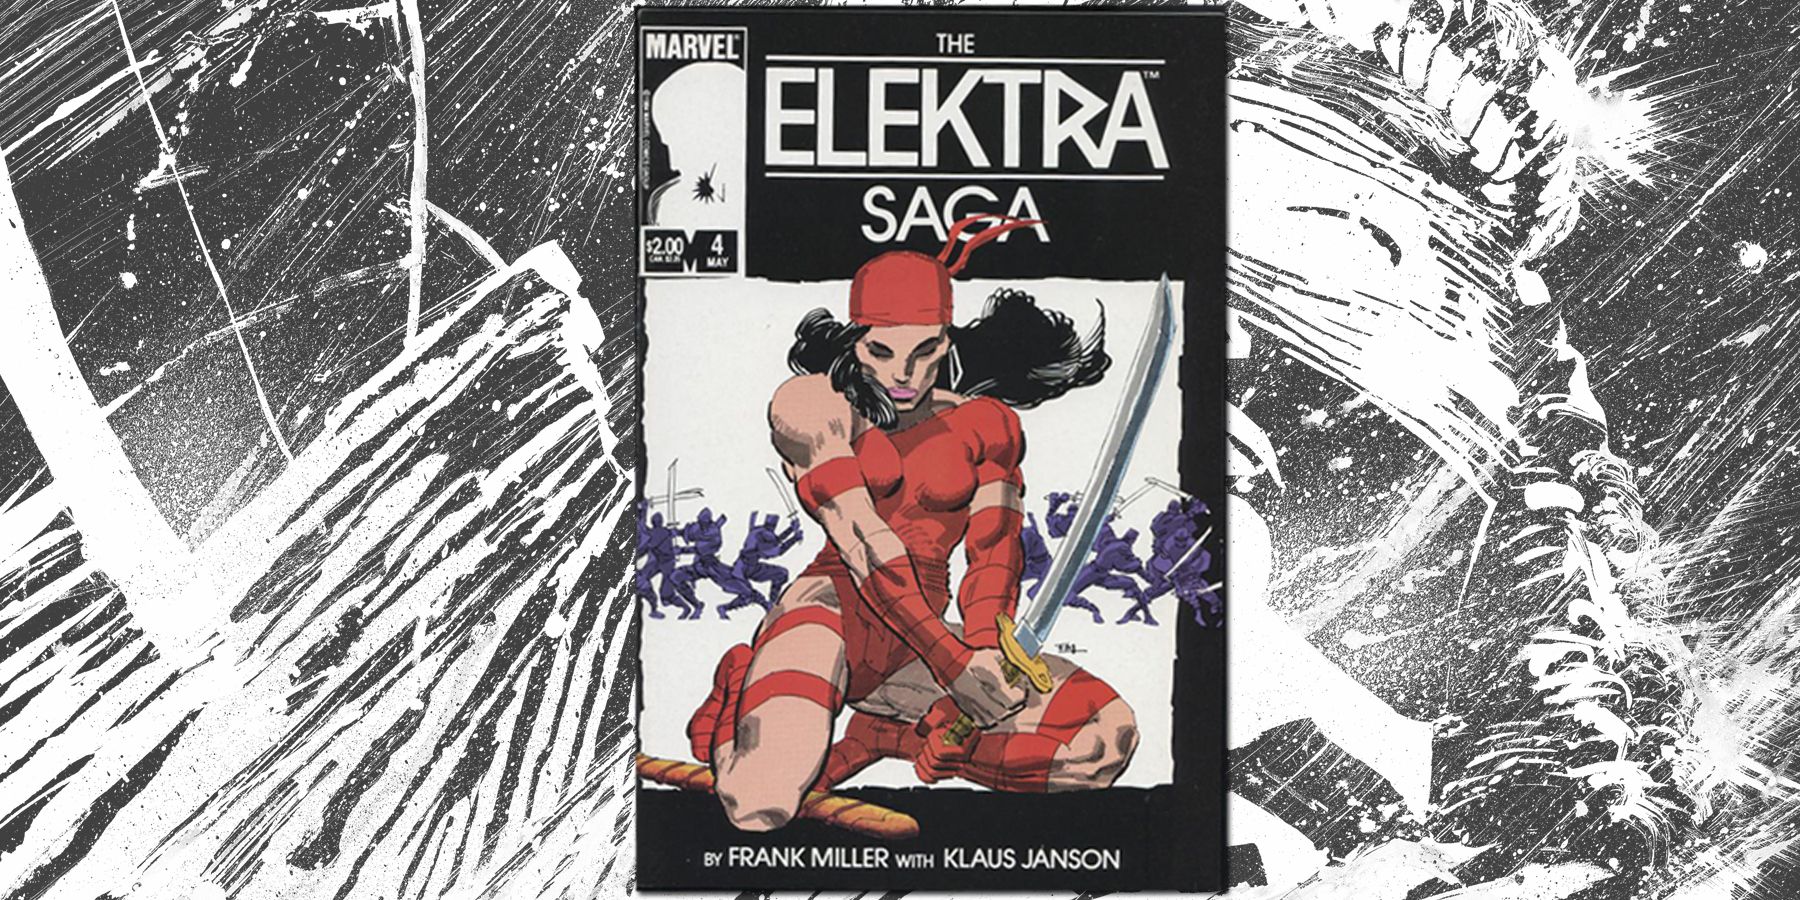 The Electra Saga #4